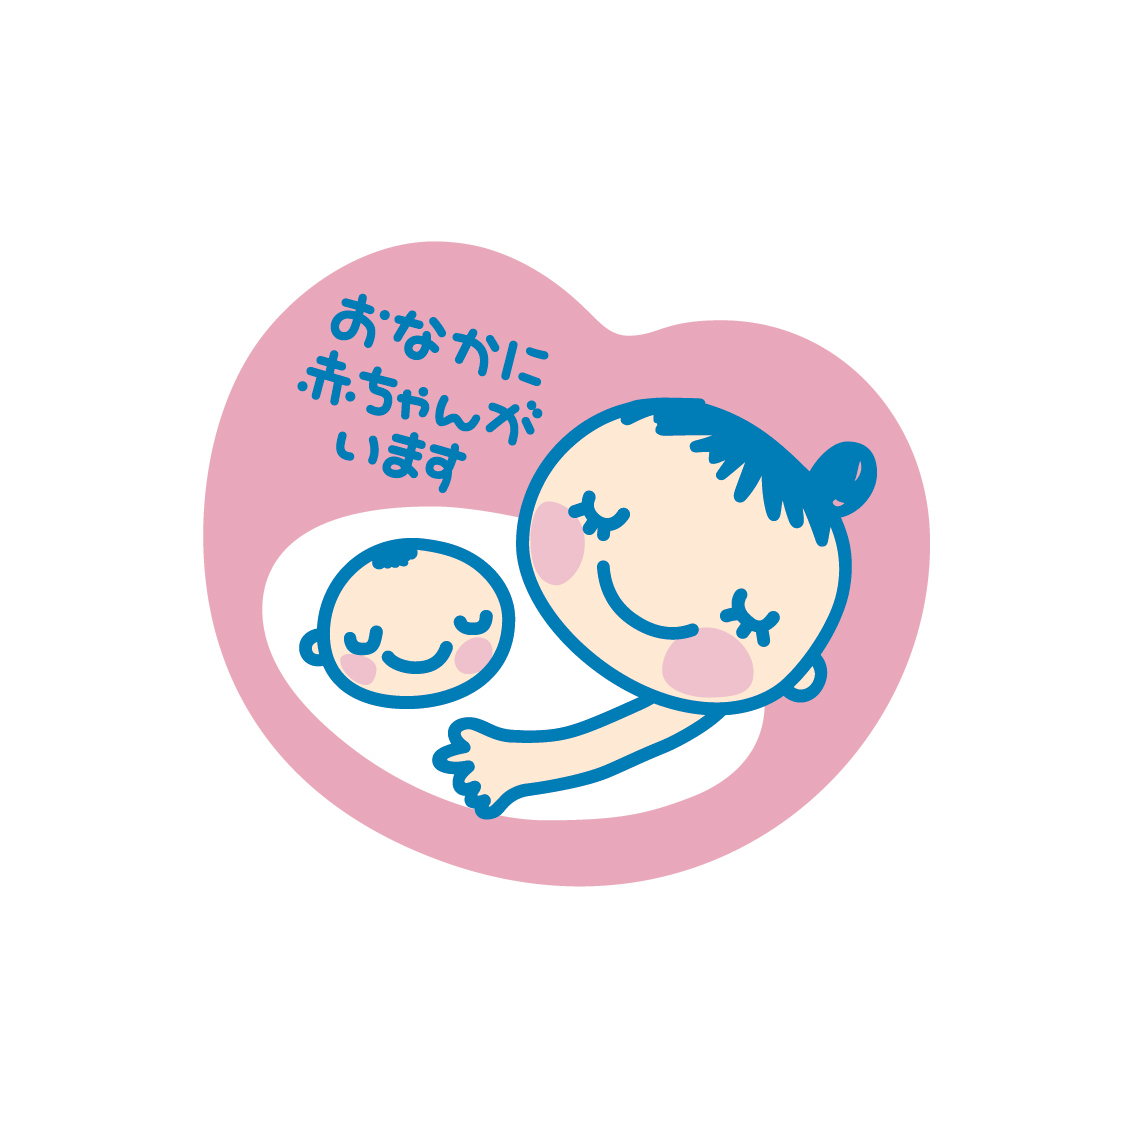 ハートマークの中に赤ちゃんを抱えた母親が描かれており、「おなかに赤ちゃんがいます」と記載されているマタニティーマークの画像